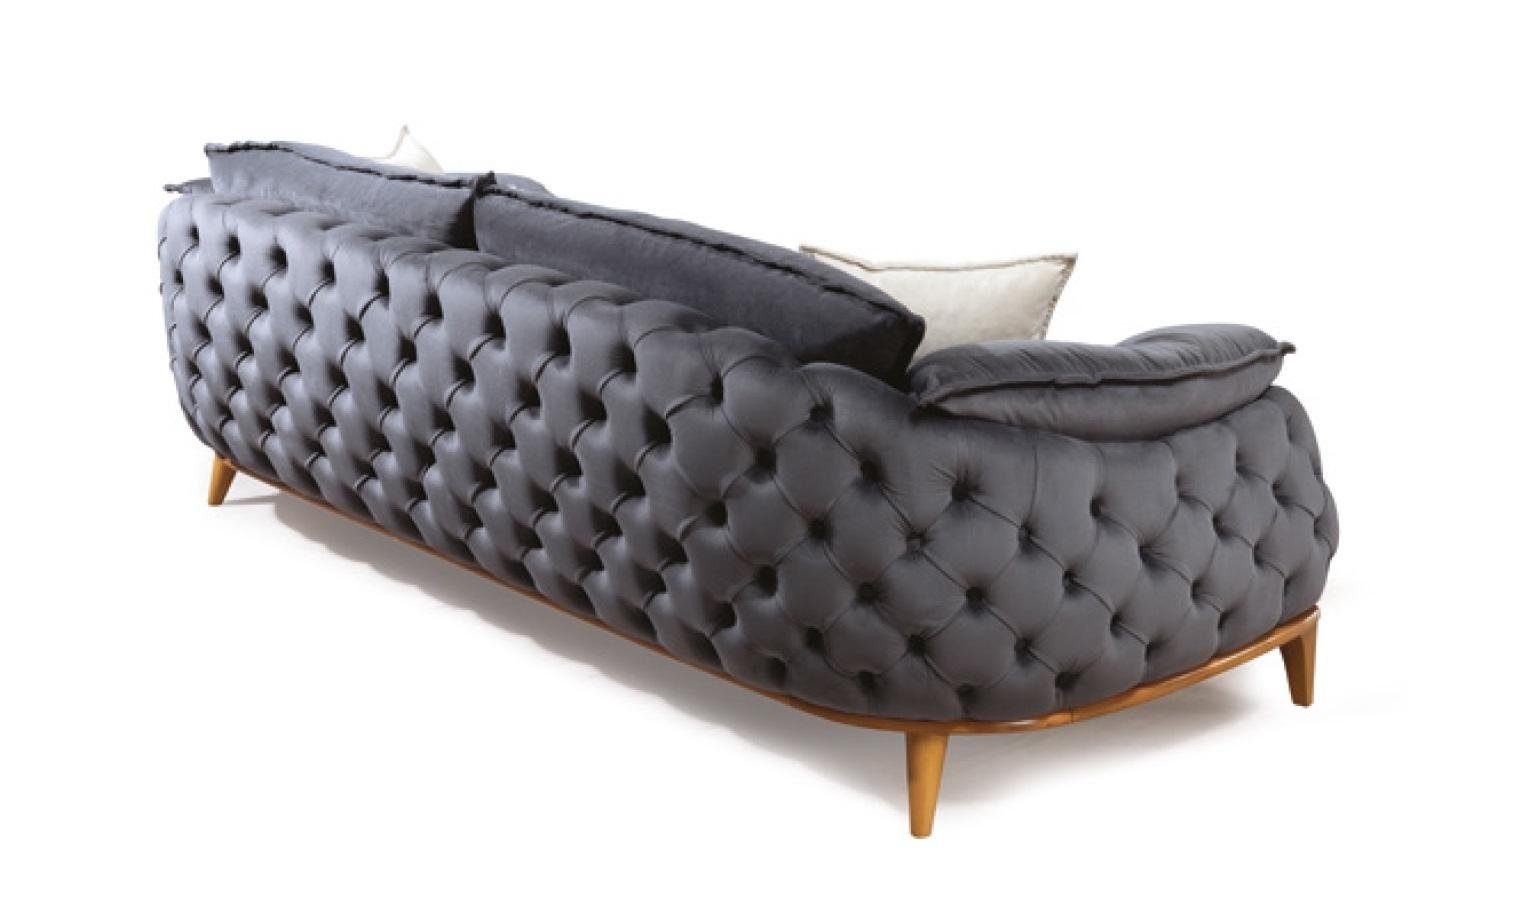 JVmoebel Sofa Grauer Dreisitzer Chesterfield Couch Polster Sofas Textil Leder Sofa, Made in Europe